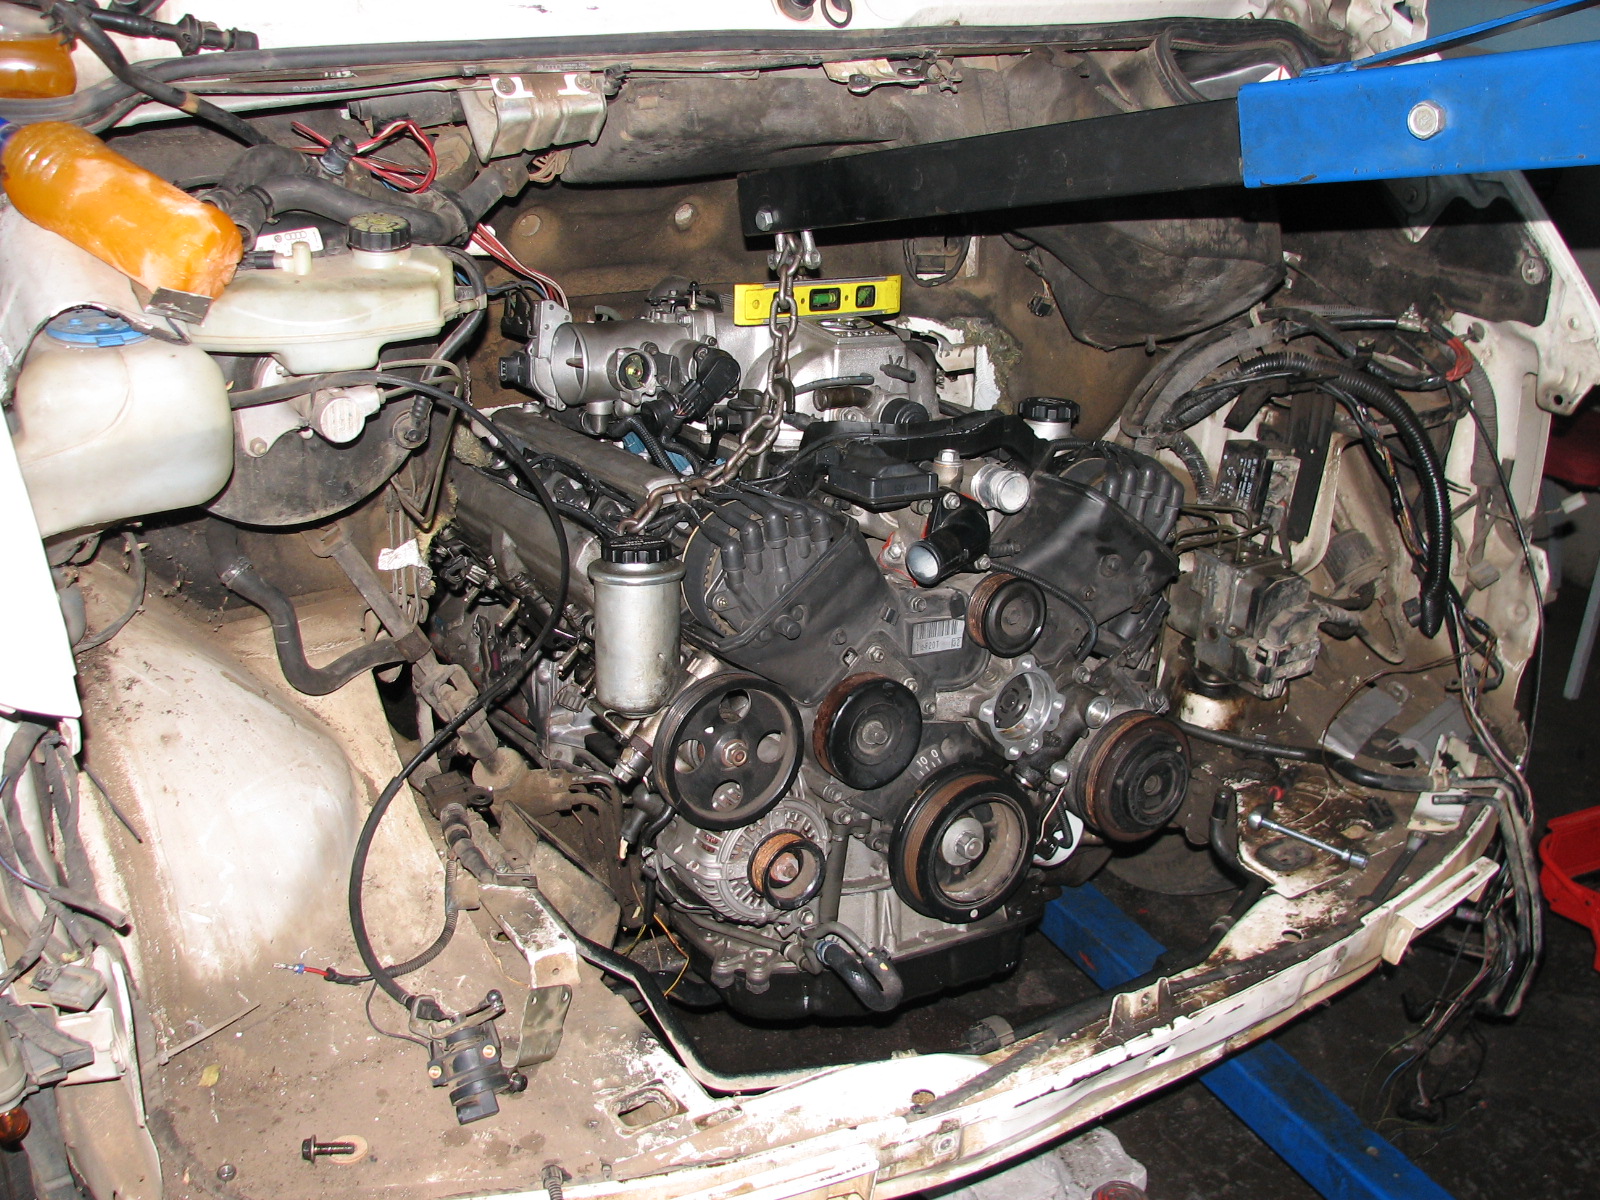 LEXUS 1UZ FE V8 ENGINE IN VW LT 46